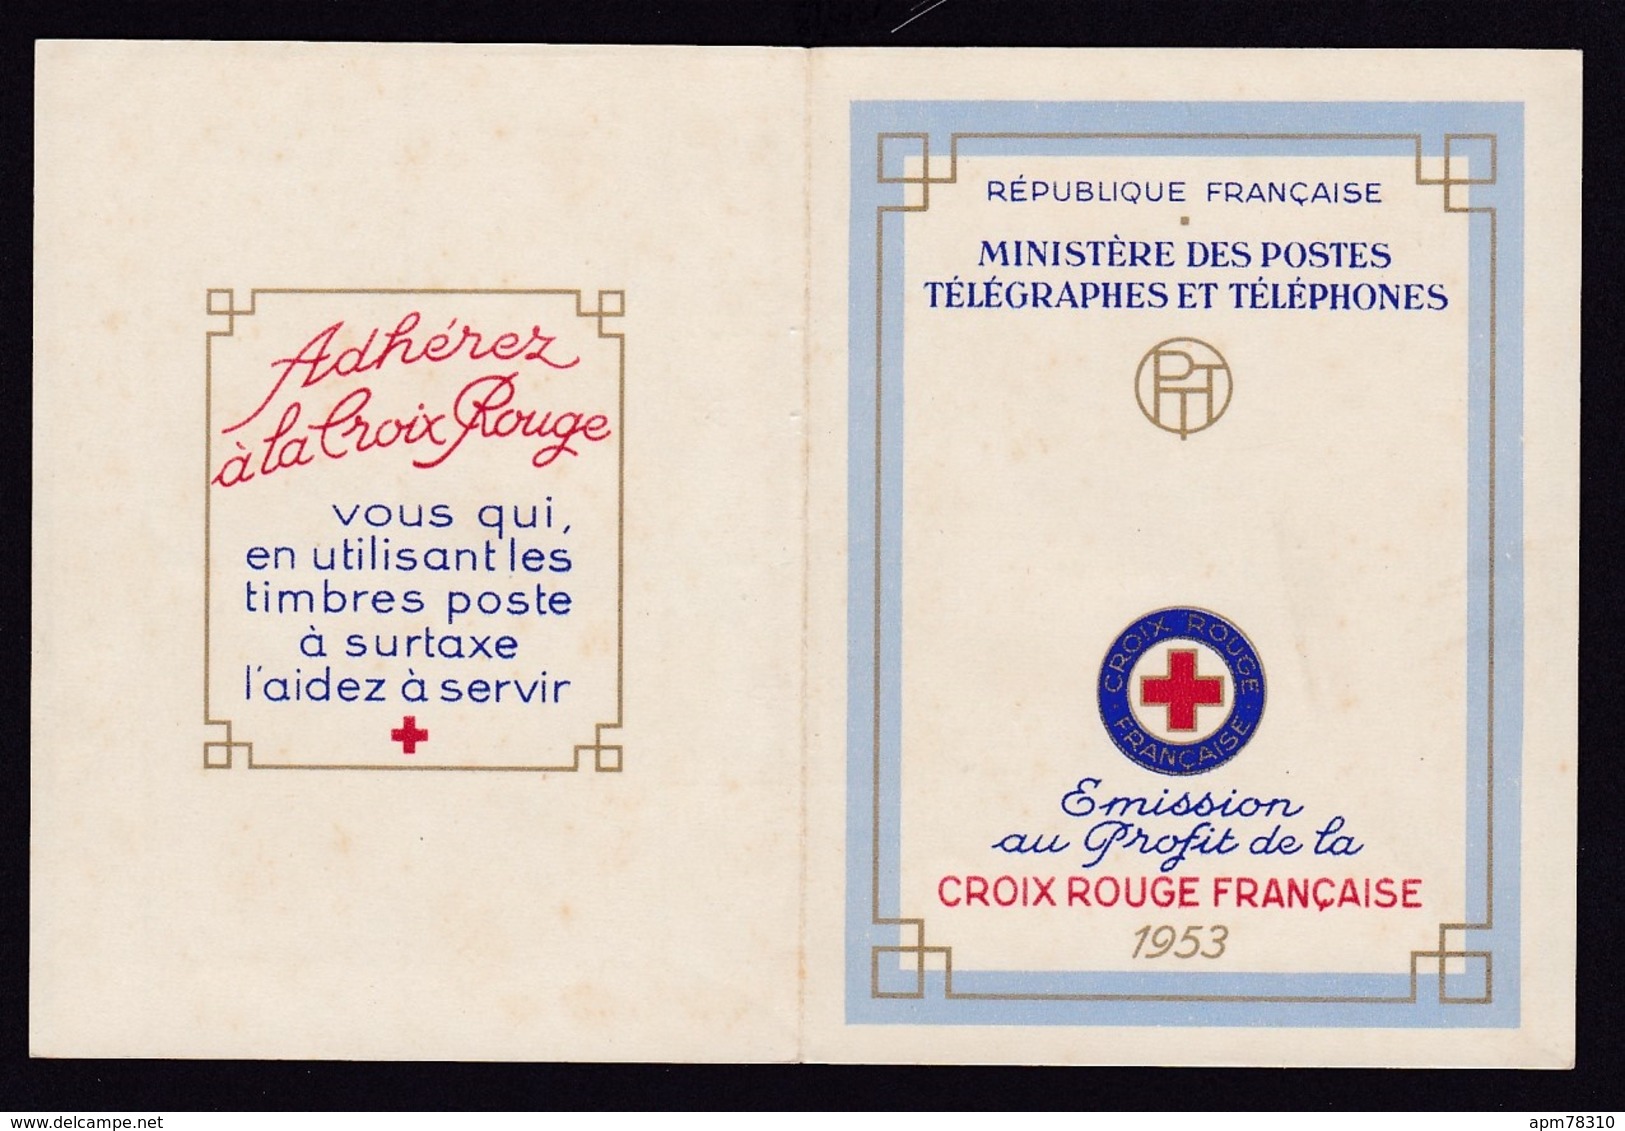 FRANCE 1953 ** Traces De Rouille Carnet Croix-rouge 1953 - Vigee-Lebrun - Retour Du Bapteme - Red Cross